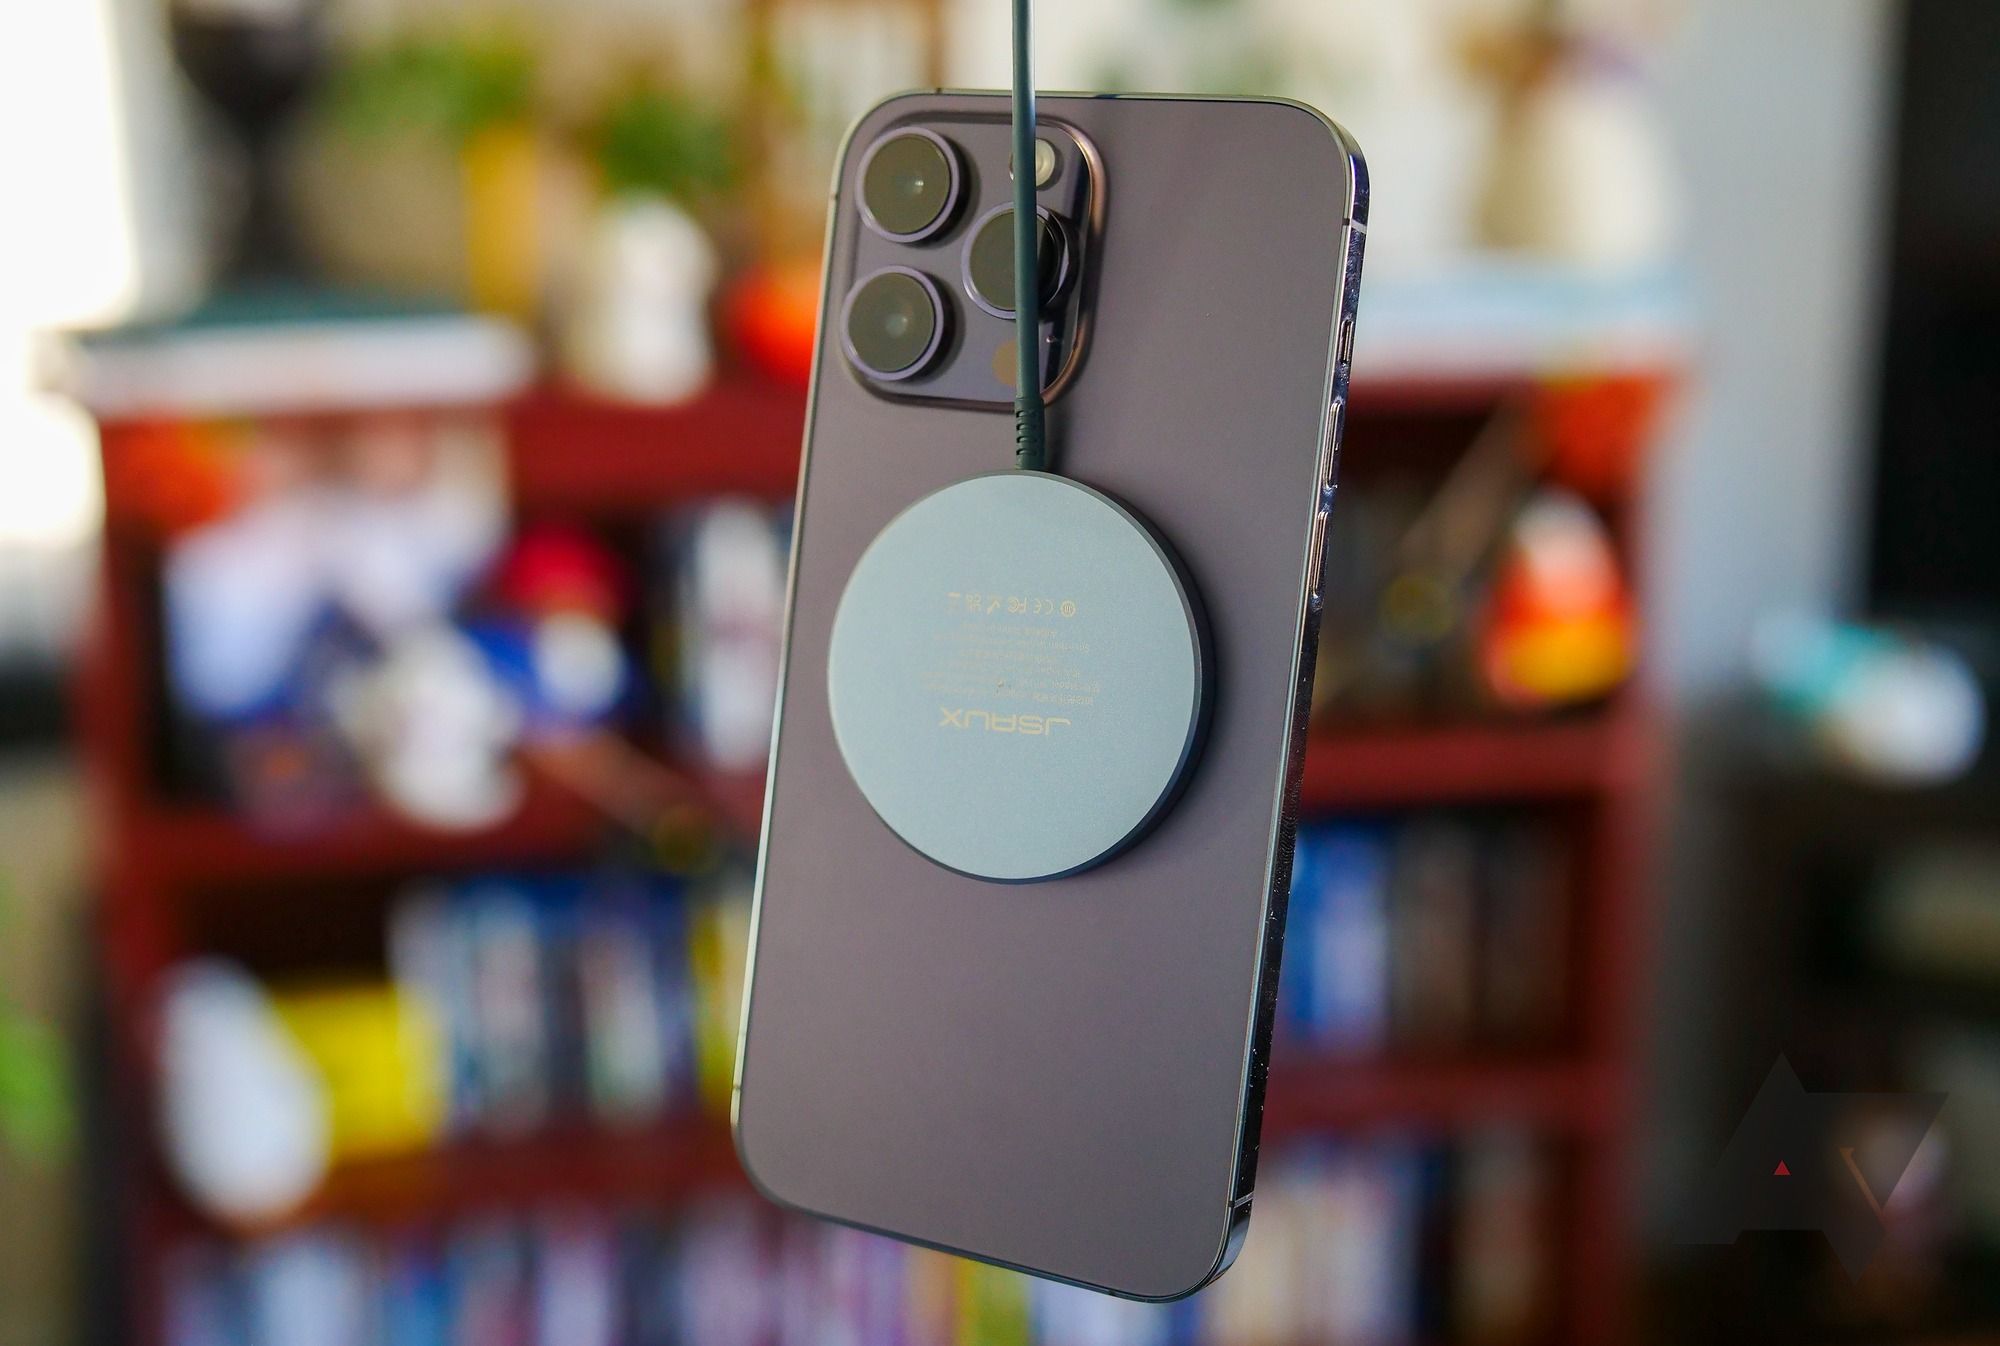 Apple iPhone com carregador MagSafe conectado.